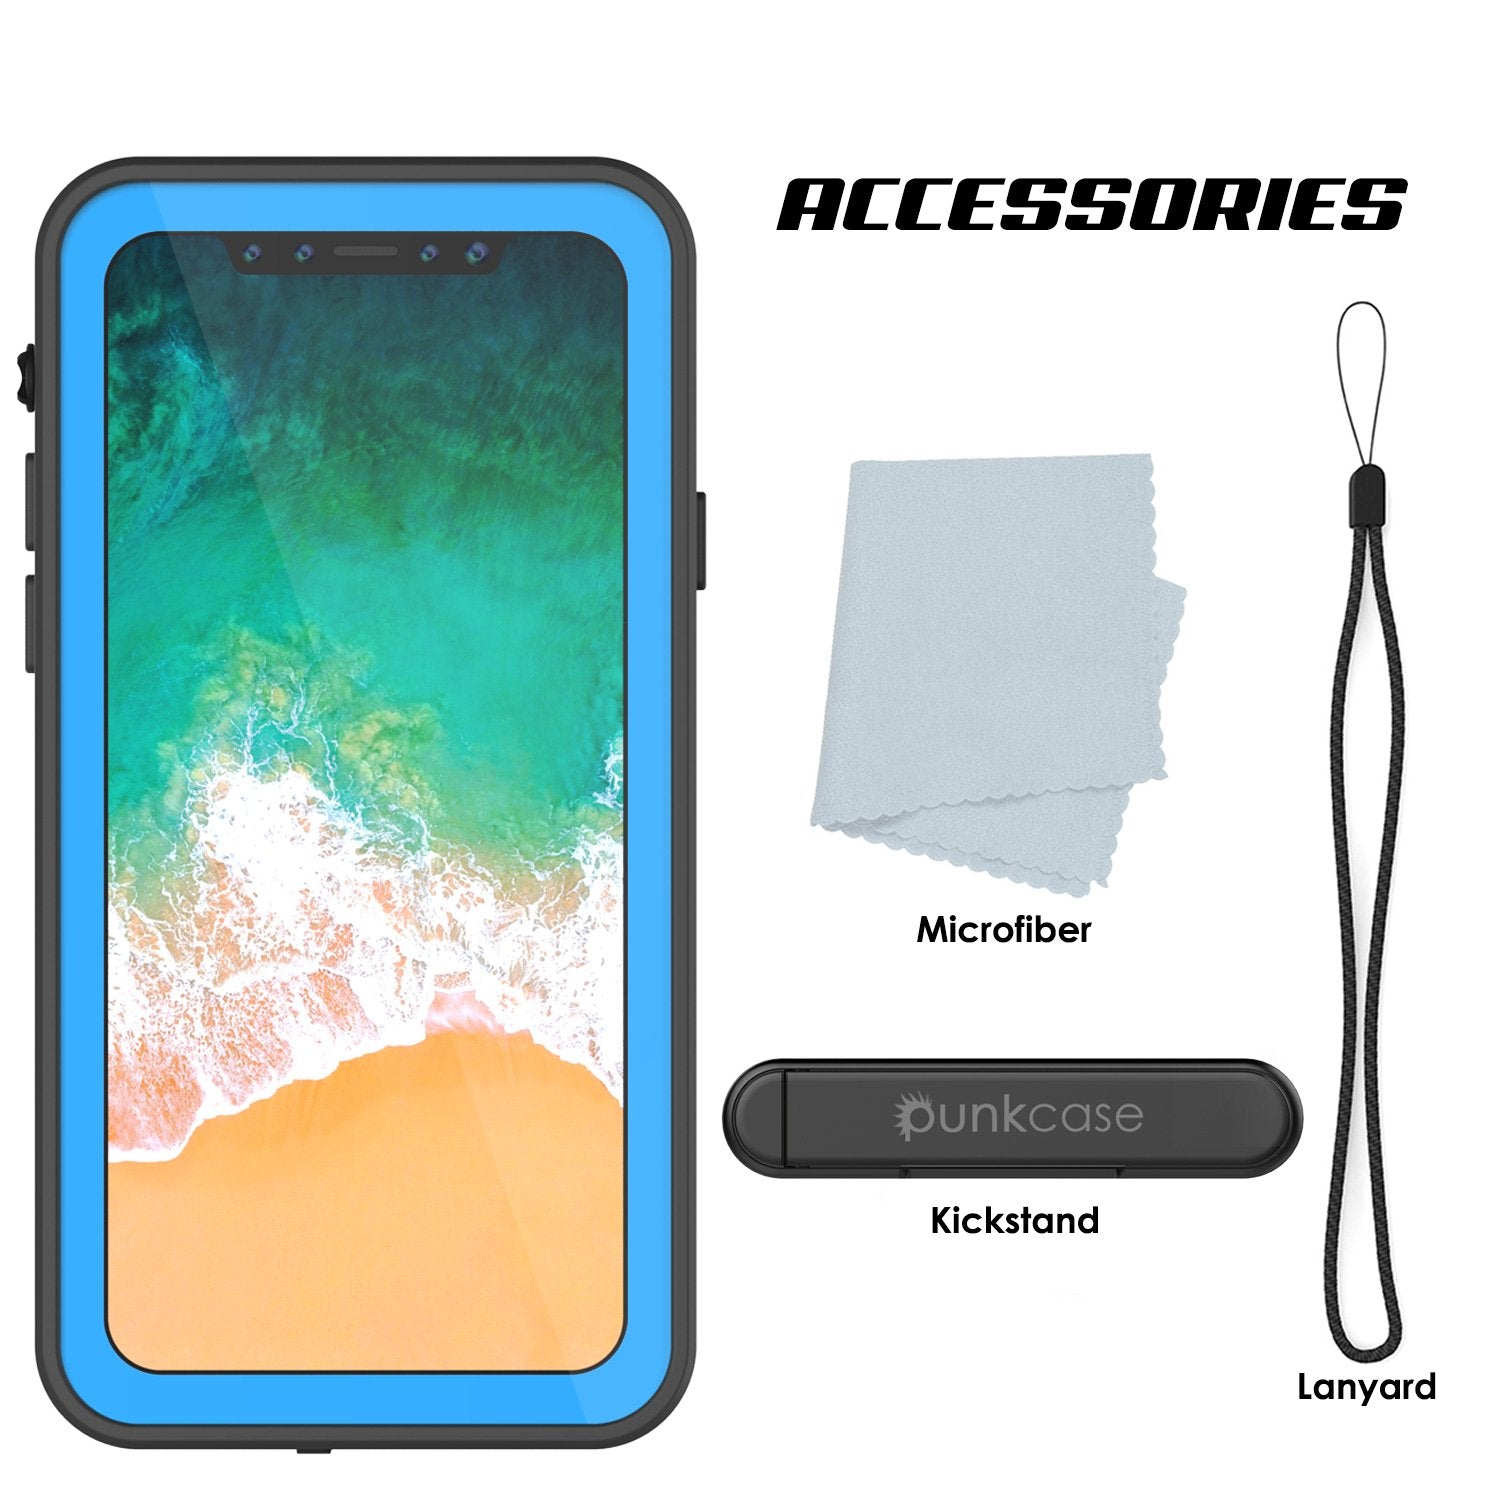 iPhone X Waterproof IP68 Case, Punkcase [Light blue] [StudStar Series] [Slim Fit] [Dirtproof]